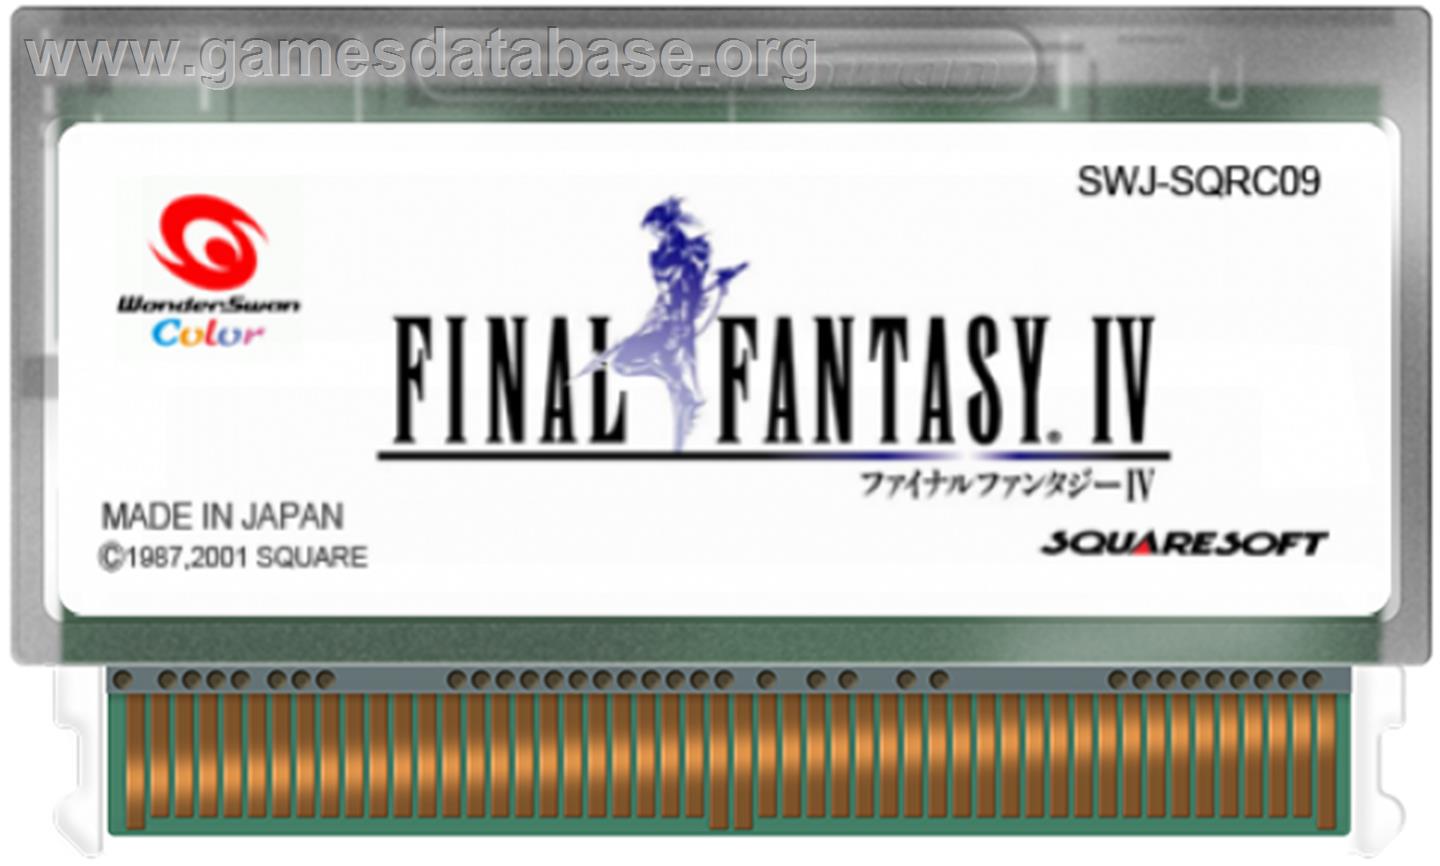 Final Fantasy IV - Bandai WonderSwan Color - Artwork - Cartridge